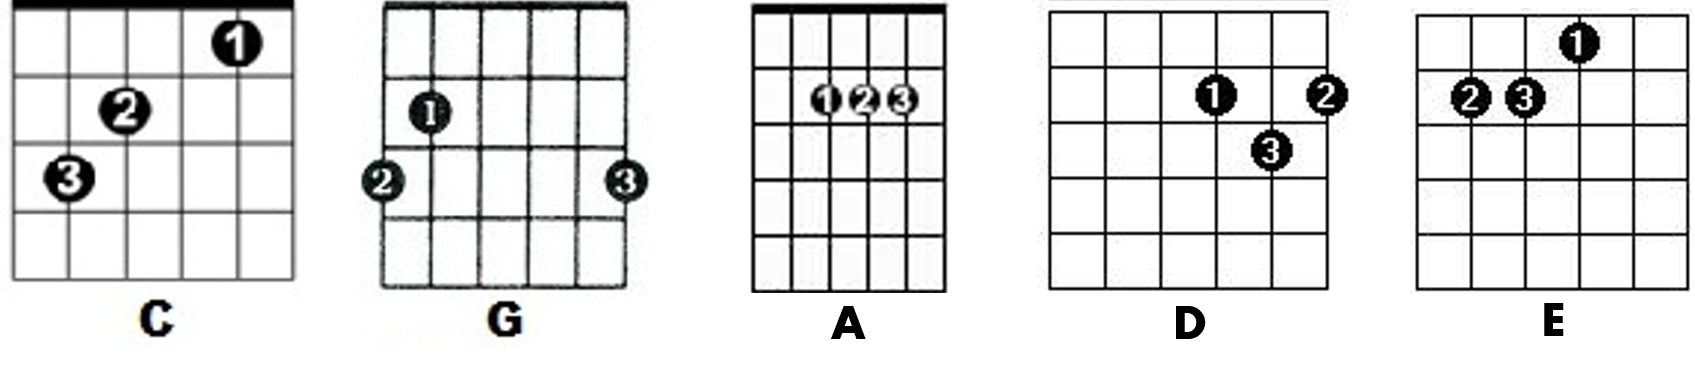 Notas E Acordes De Guitarra Teoria Musical